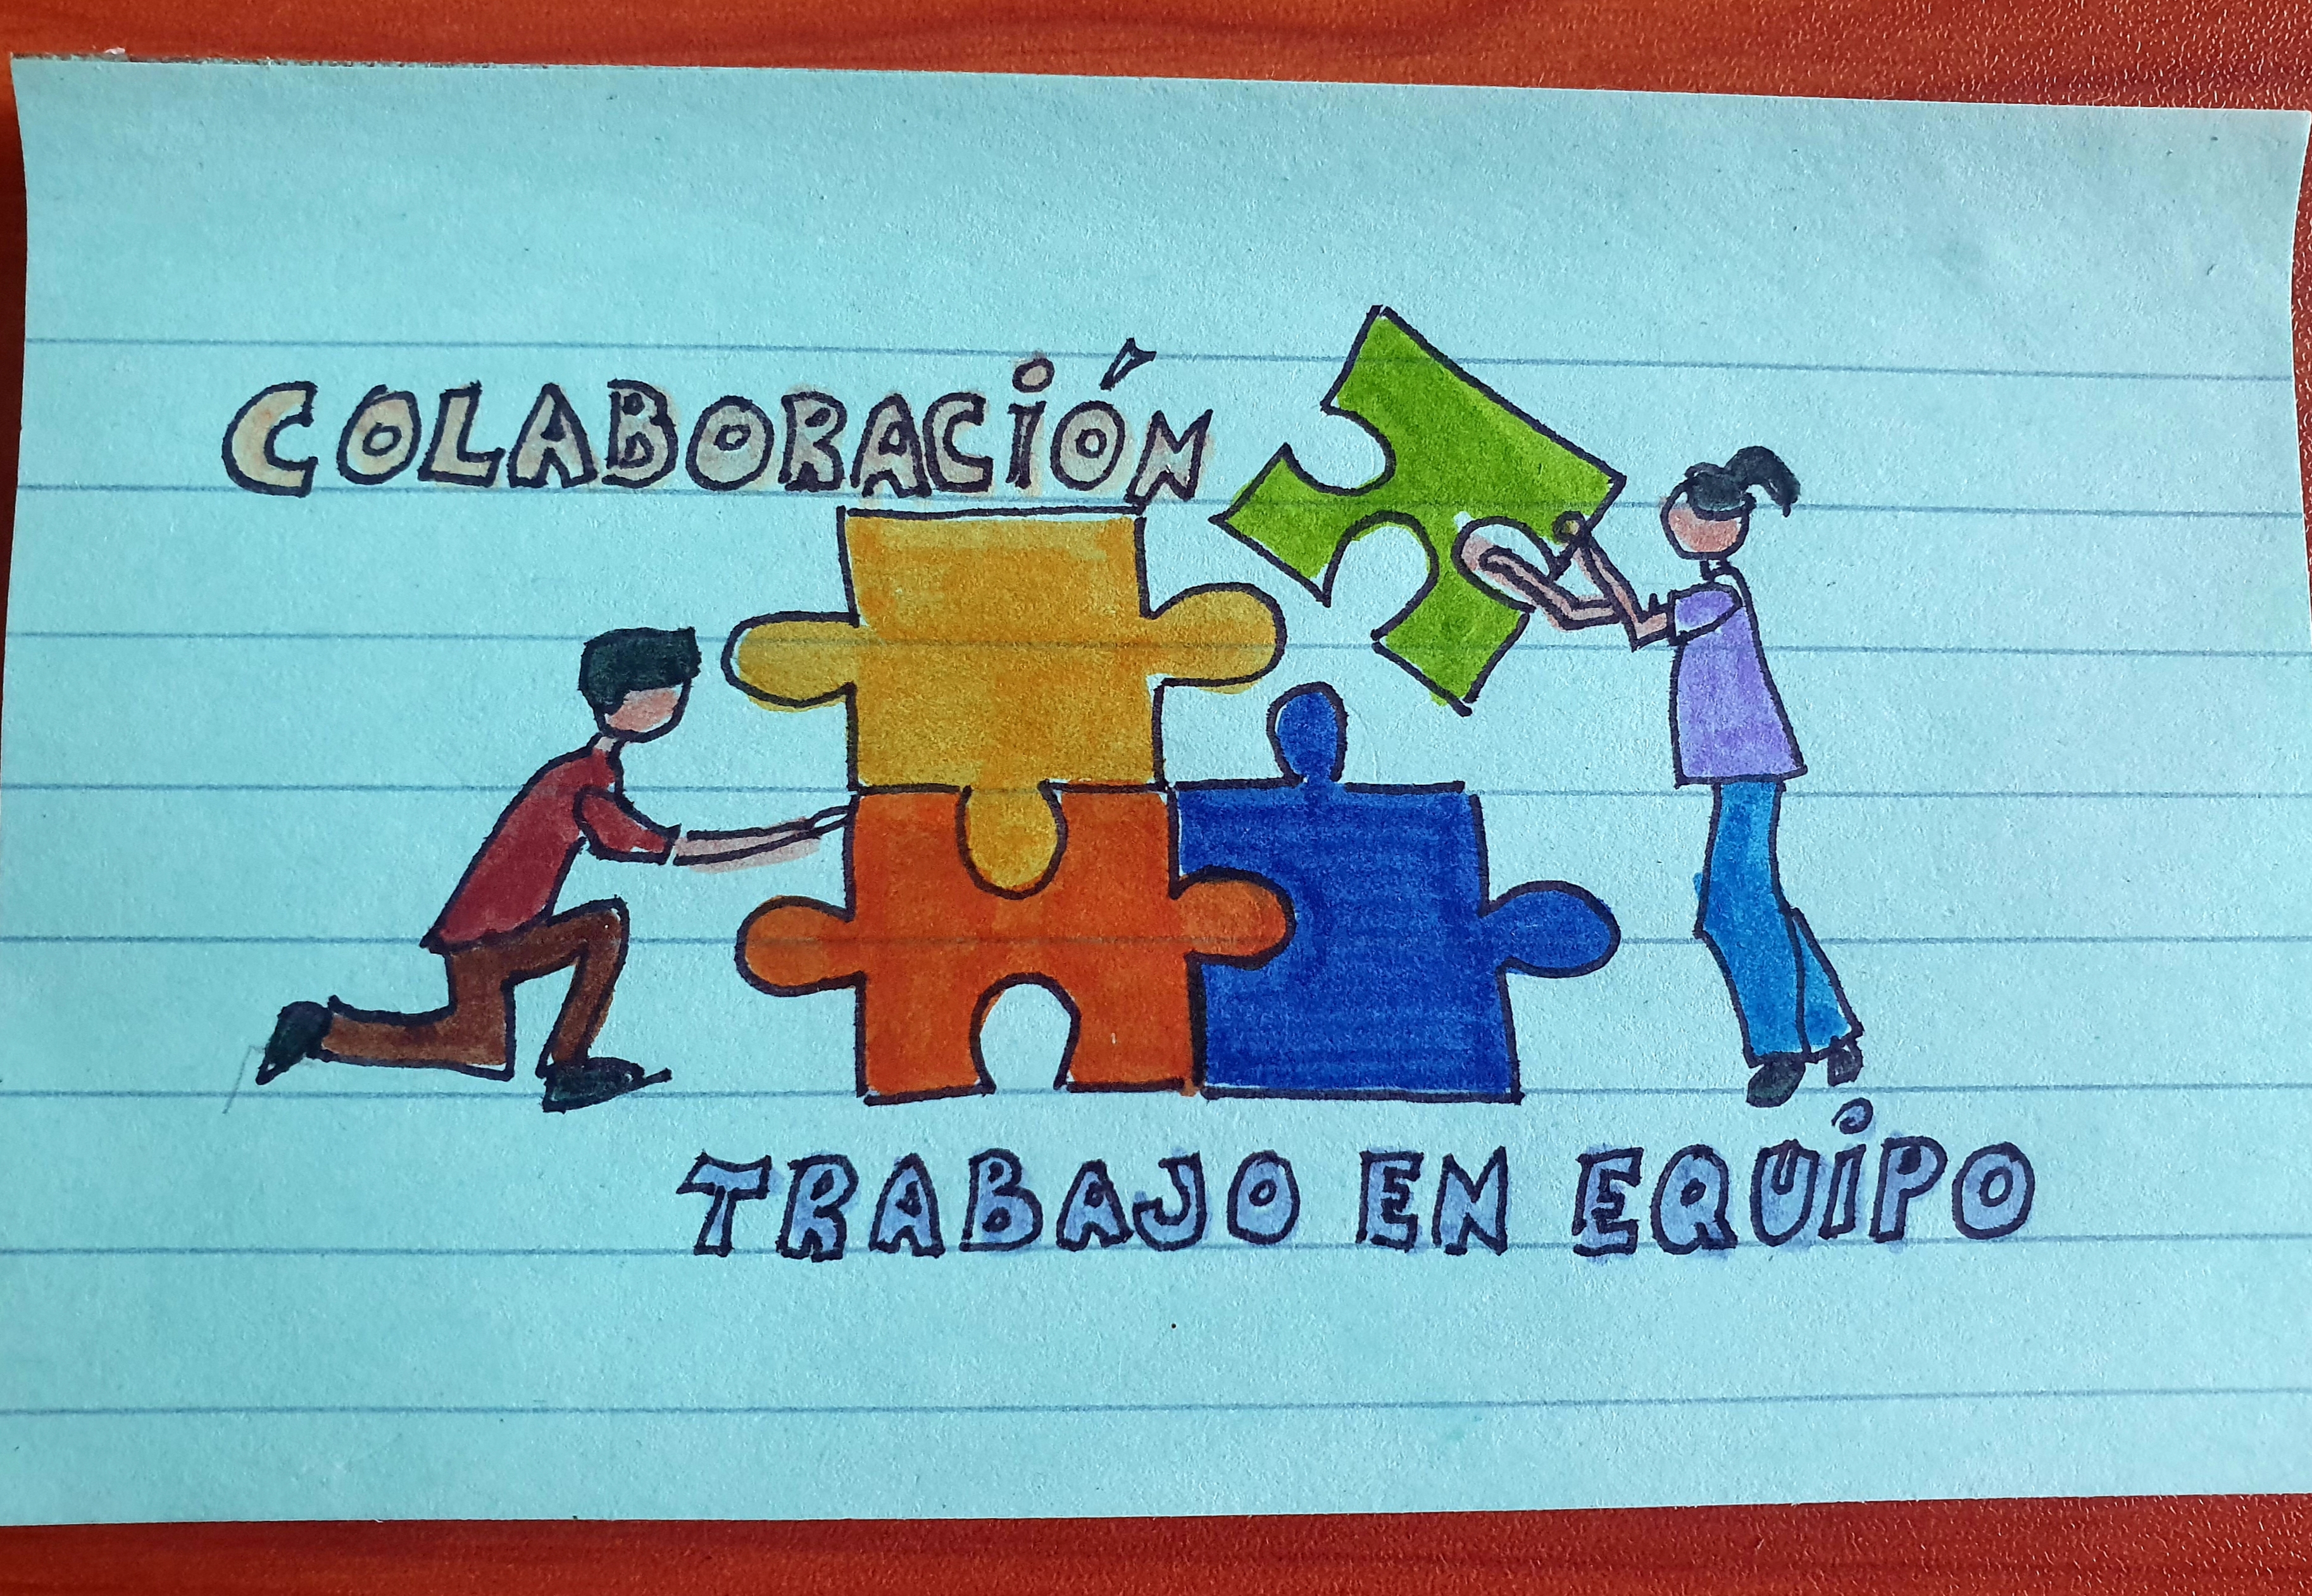 La enseñanza centrada en el trabajo en equipo y la colaboración eficaces